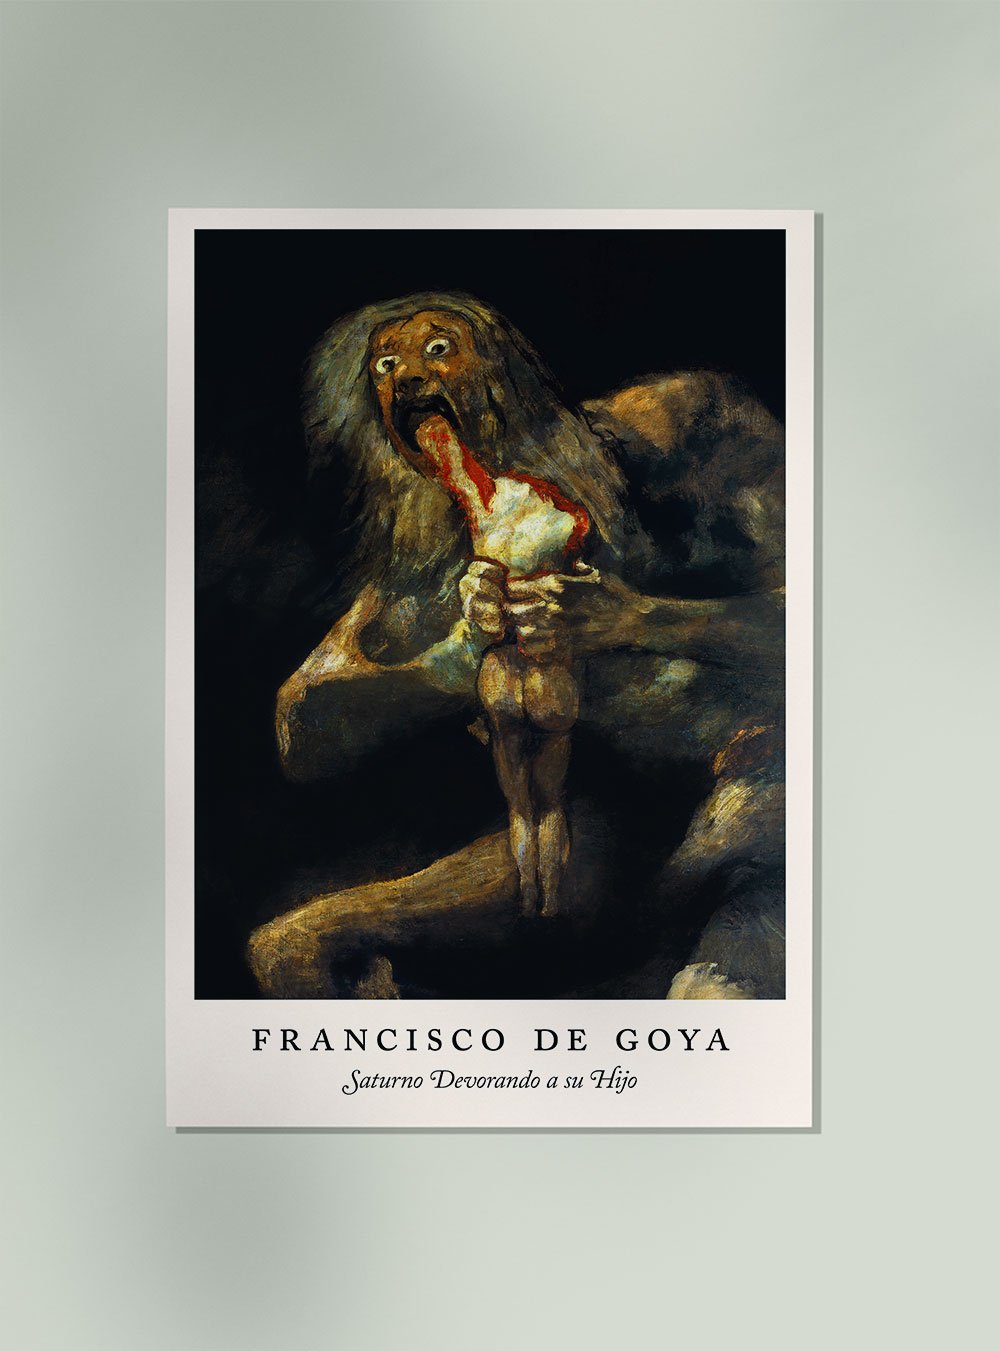 Saturno Devorando a su Hijo by Francisco de Goya